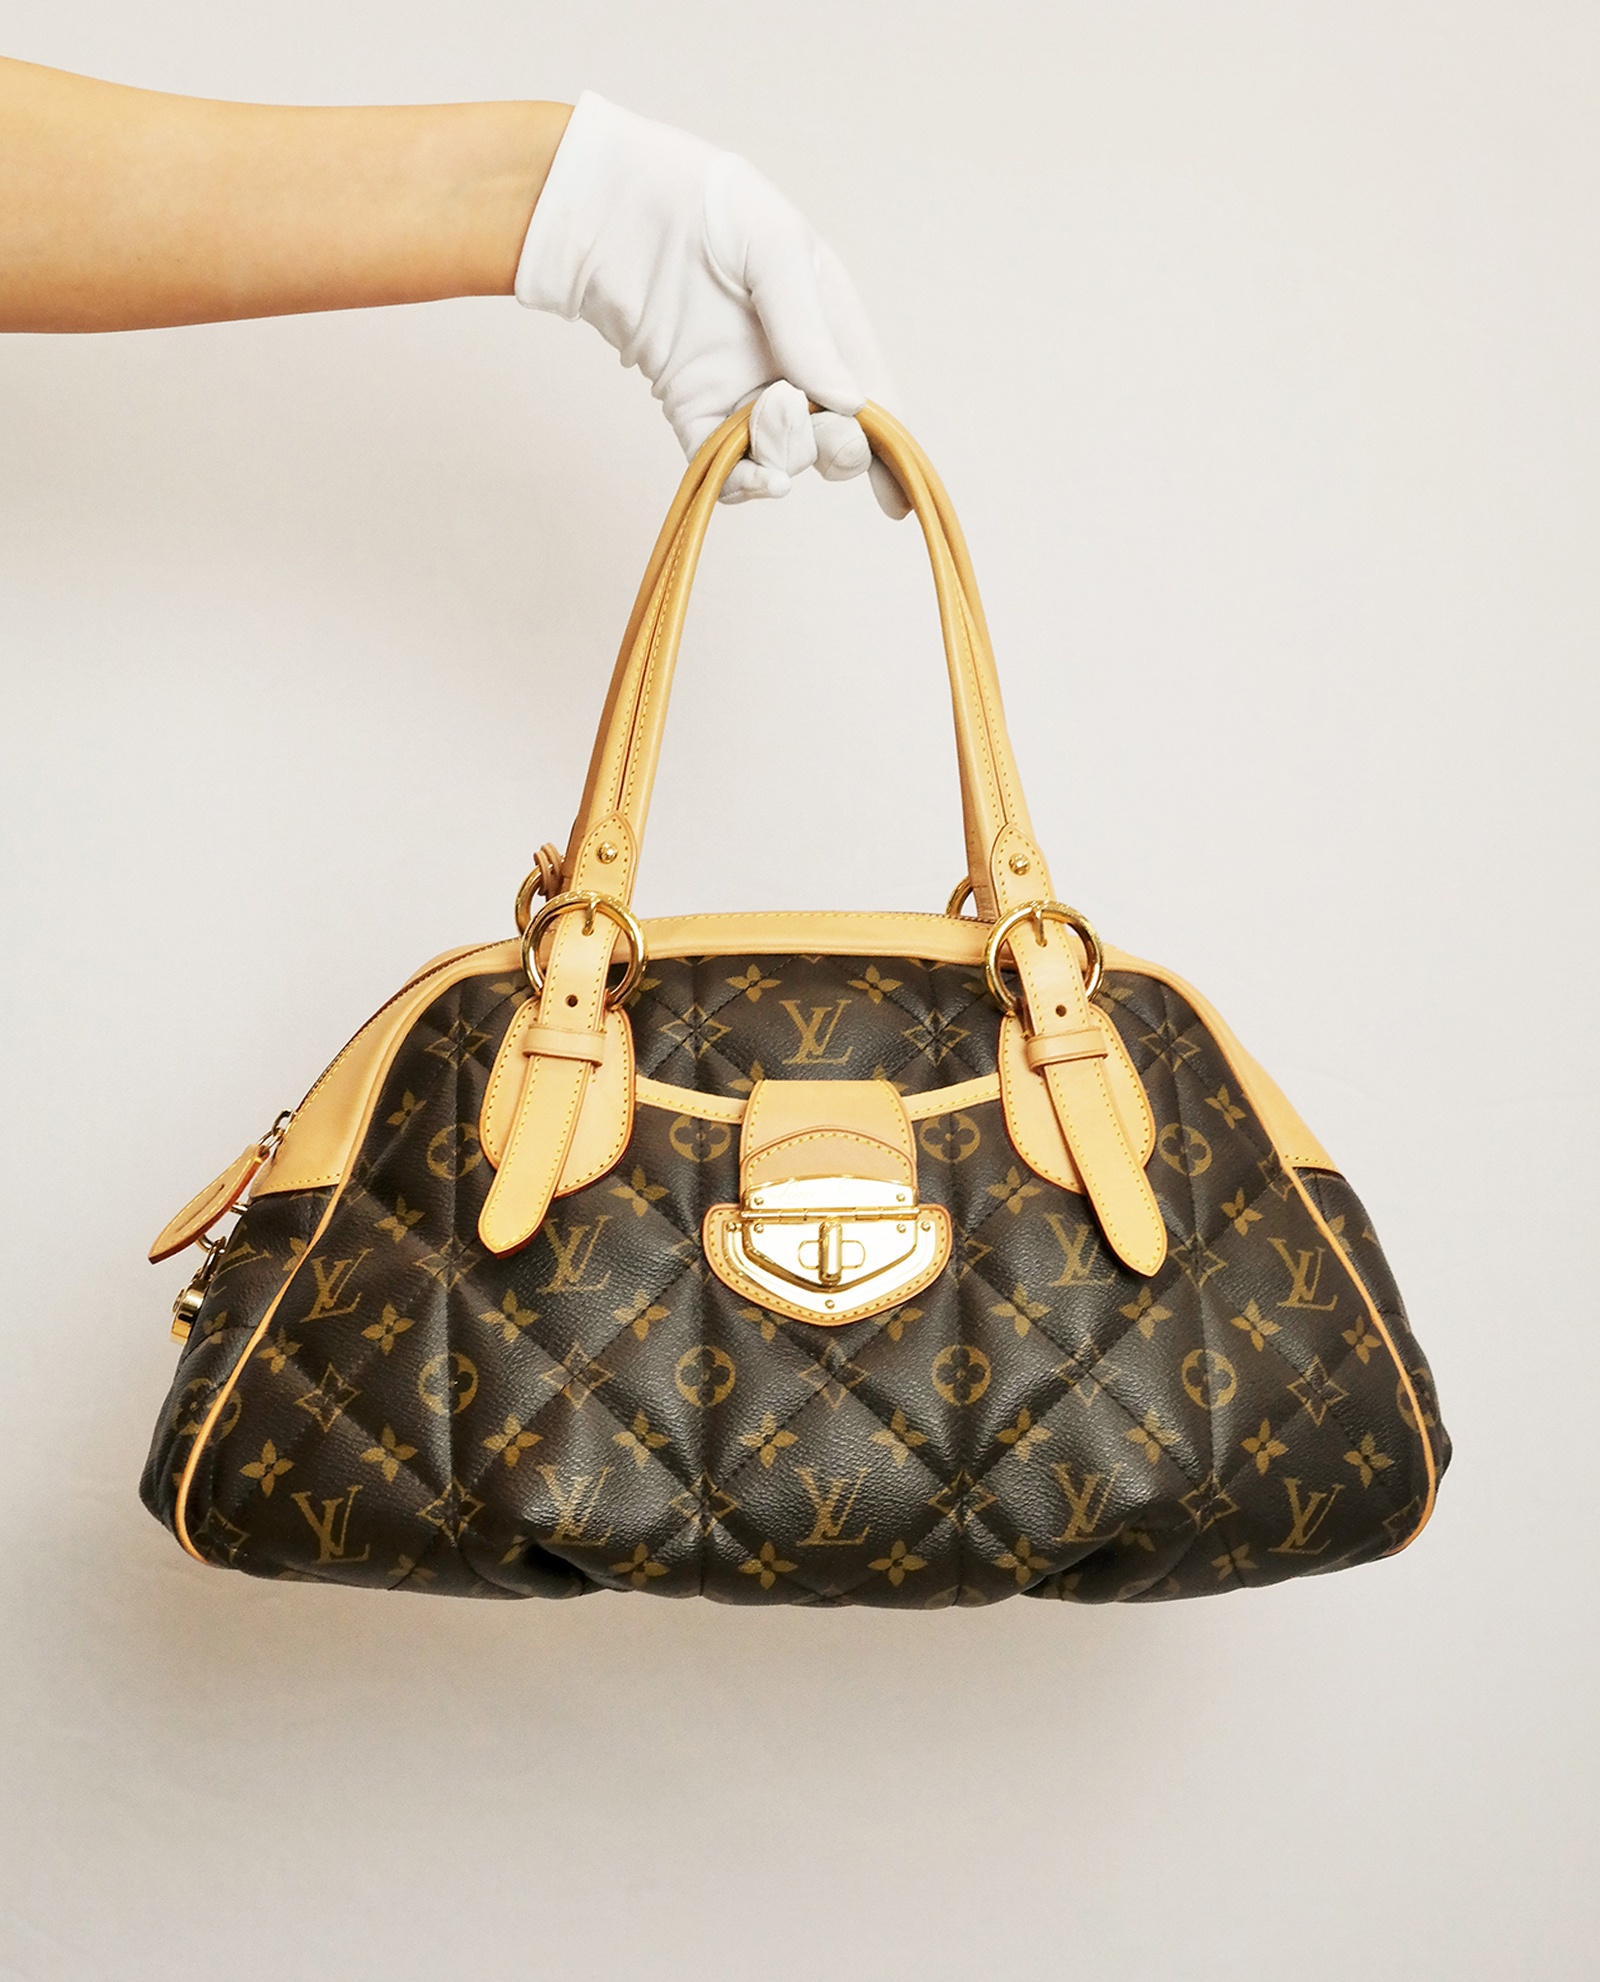 ETOILE LUXURY VINTAGE  Fashion, Louis vuitton handbags, Louis vuitton bag